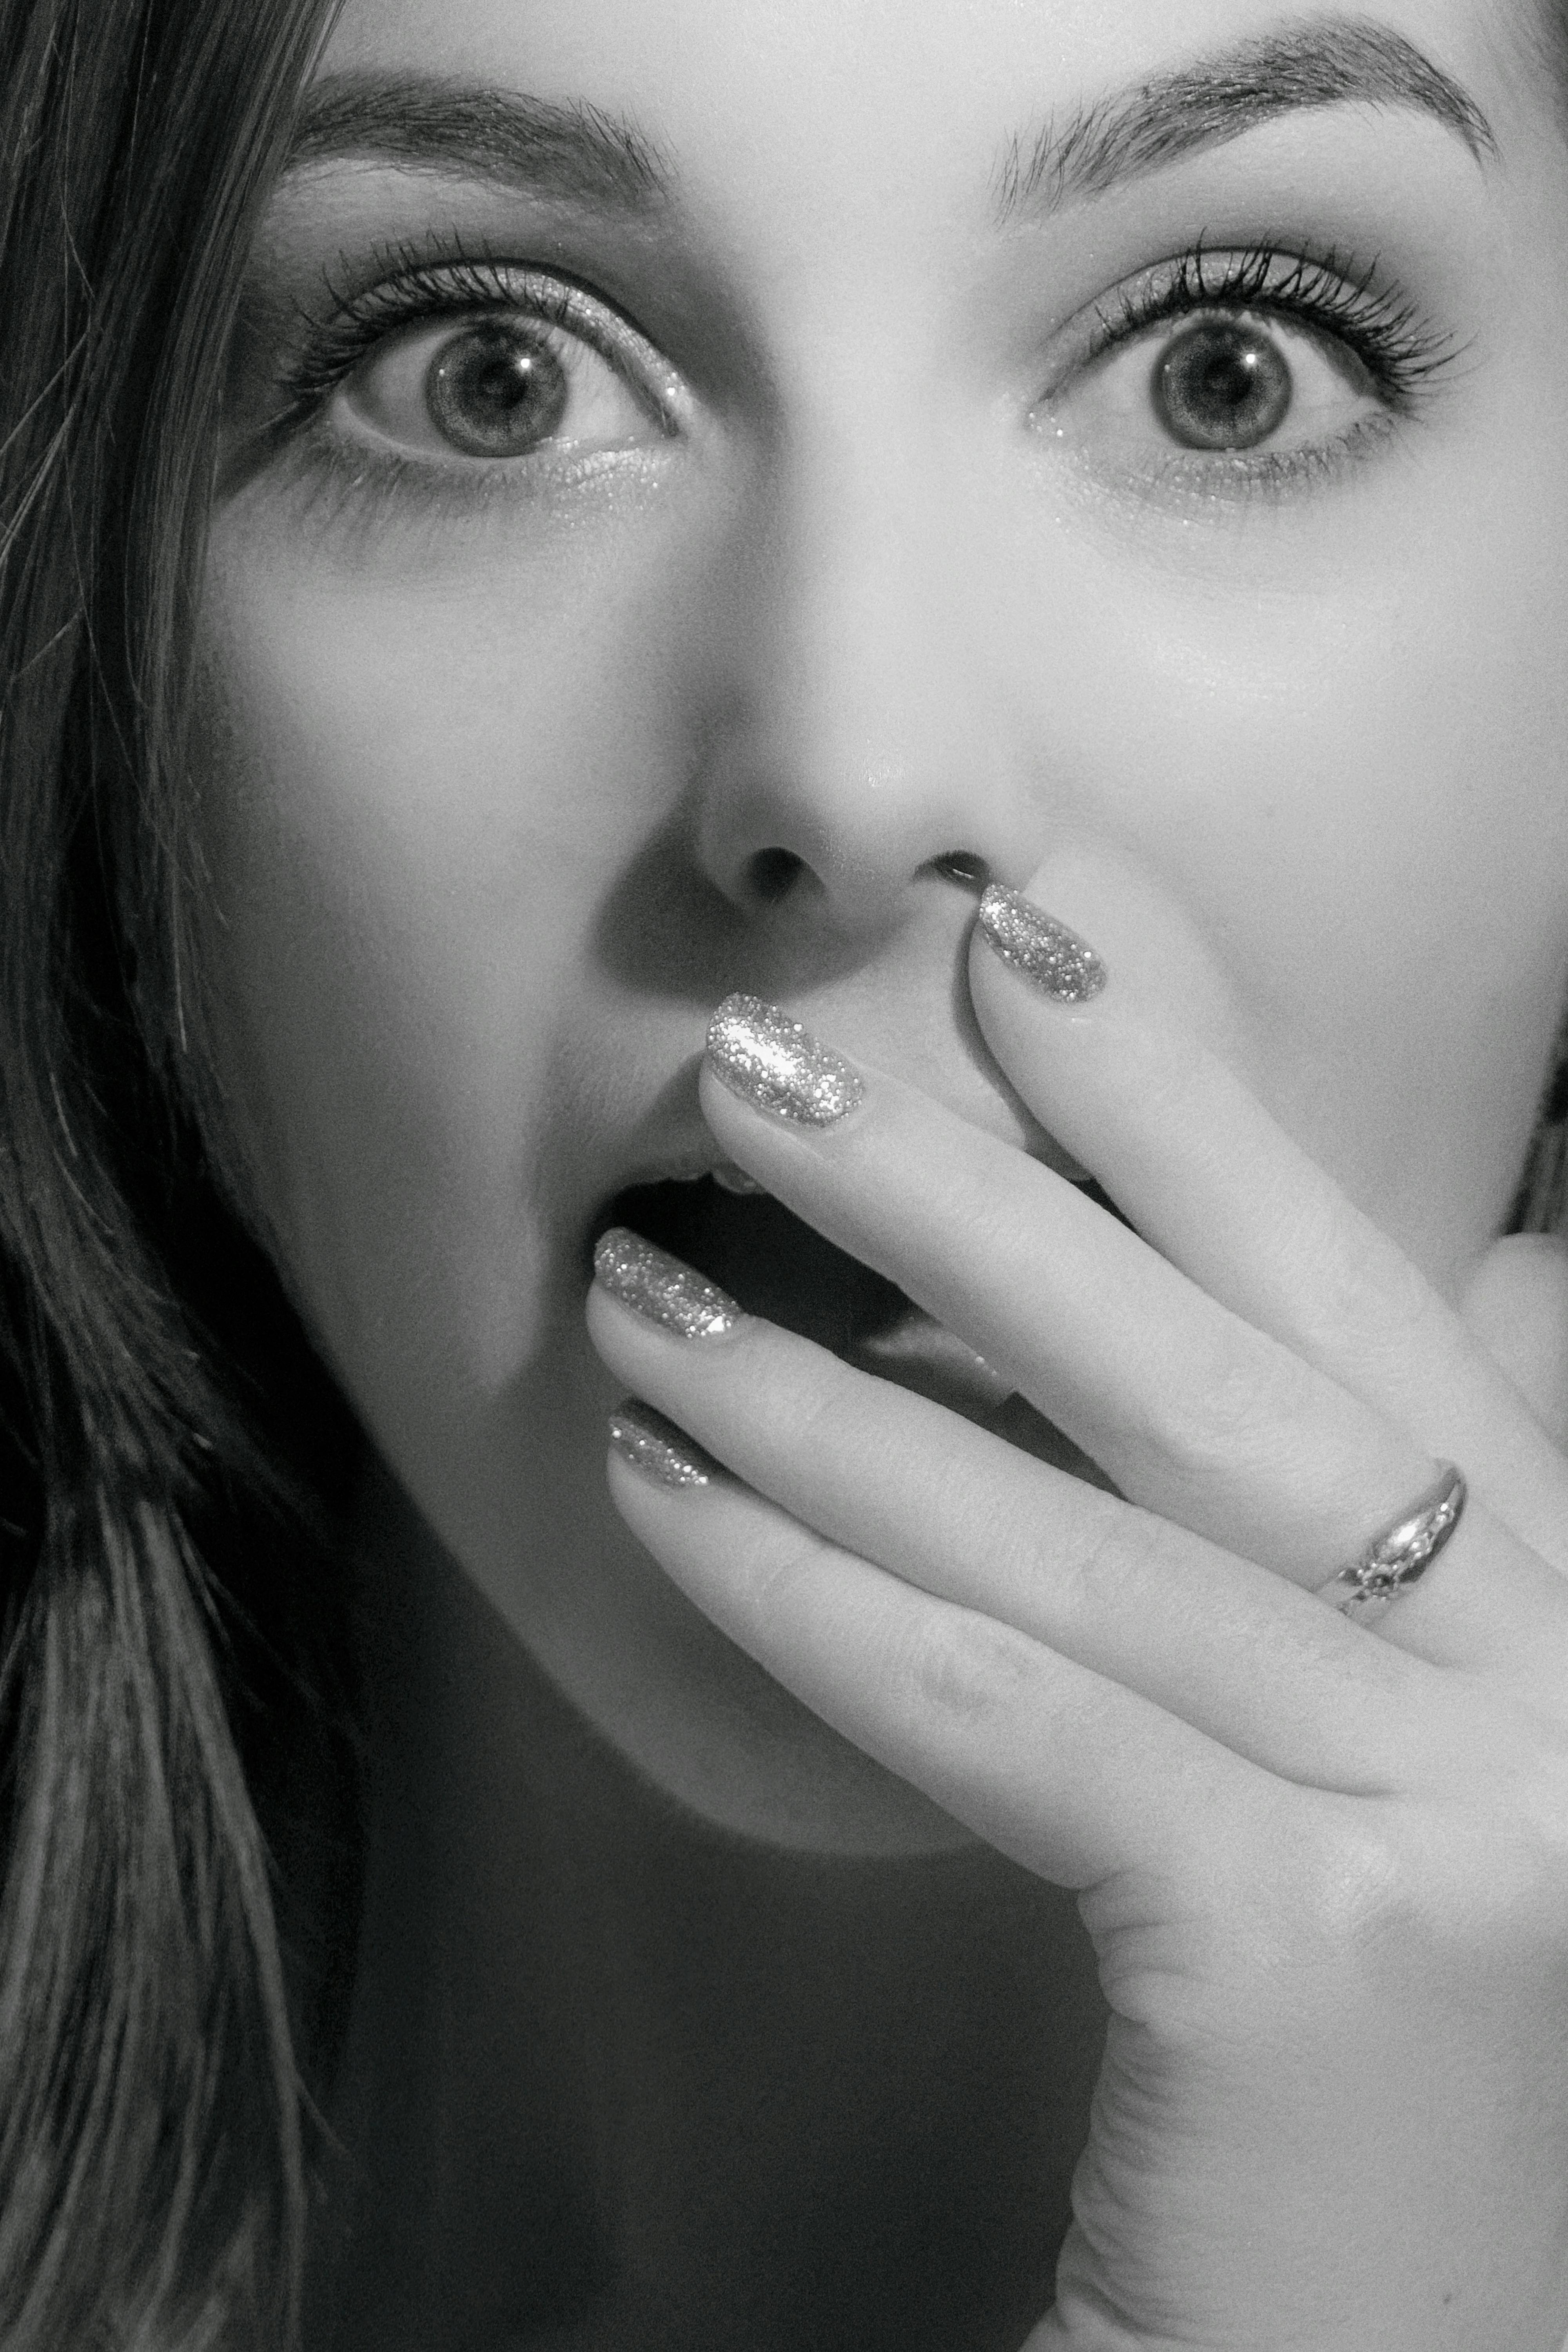 Une femme se couvre la bouche avec une main | Source : Pexels